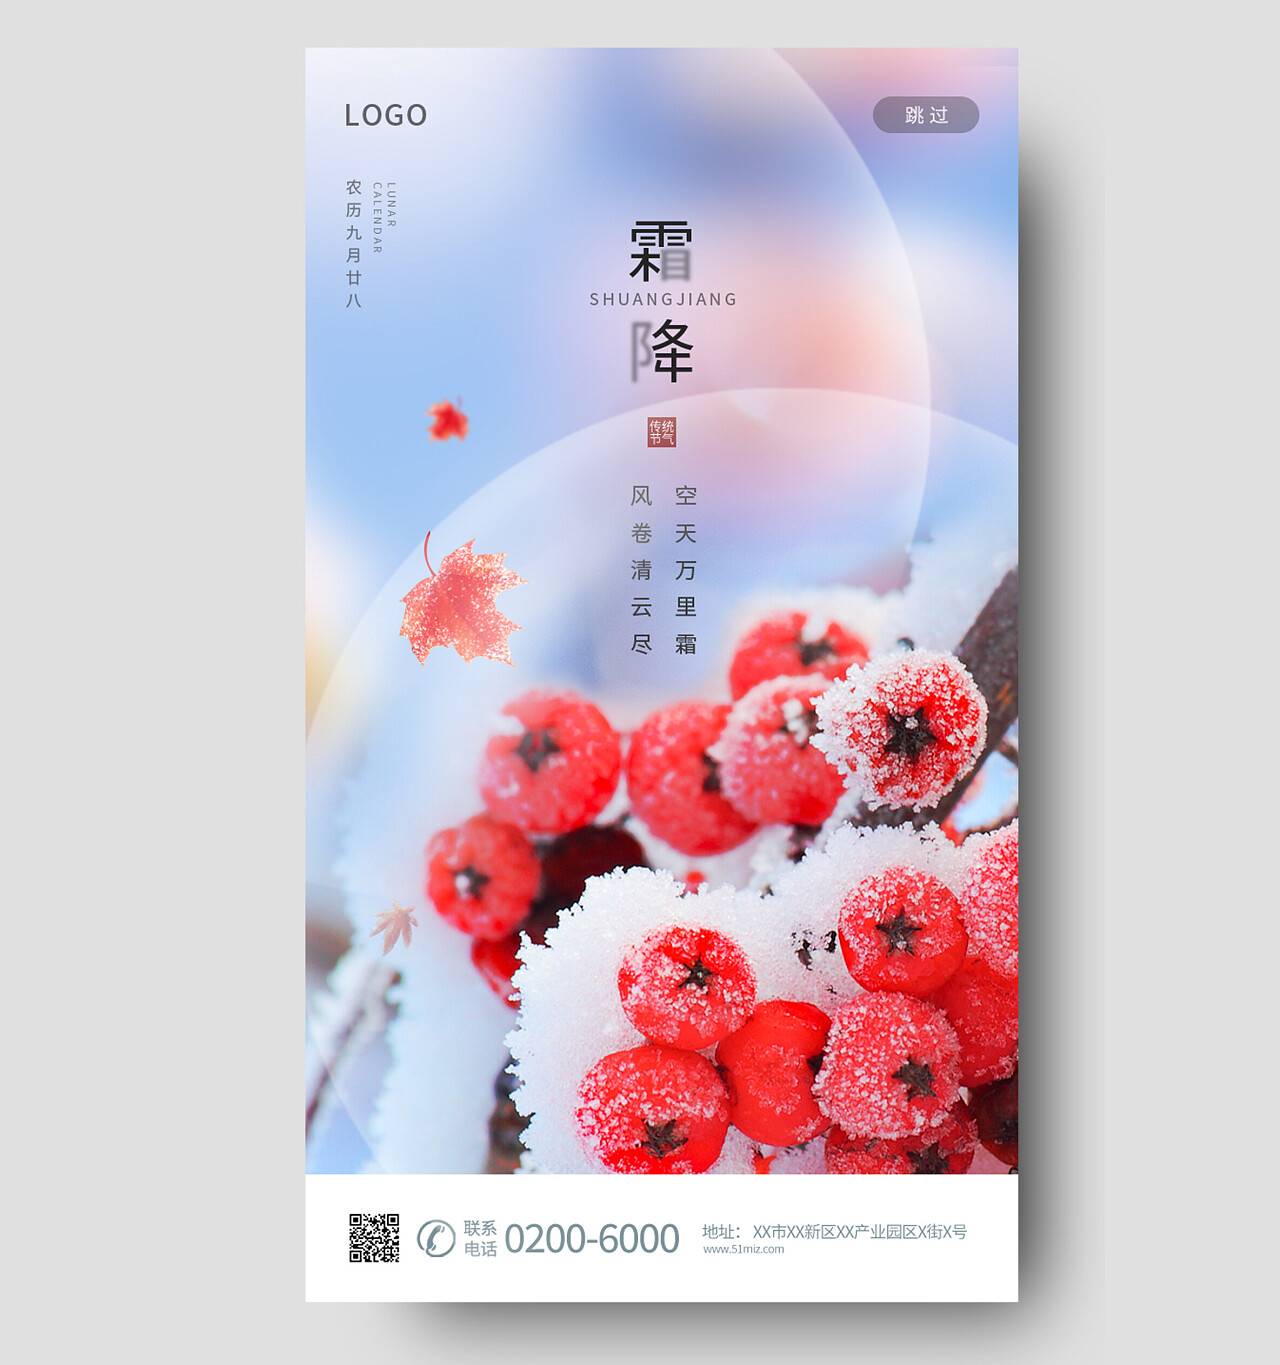 中国传统节日24节气二十四节气霜降手机海报霜降手机宣传海报节日